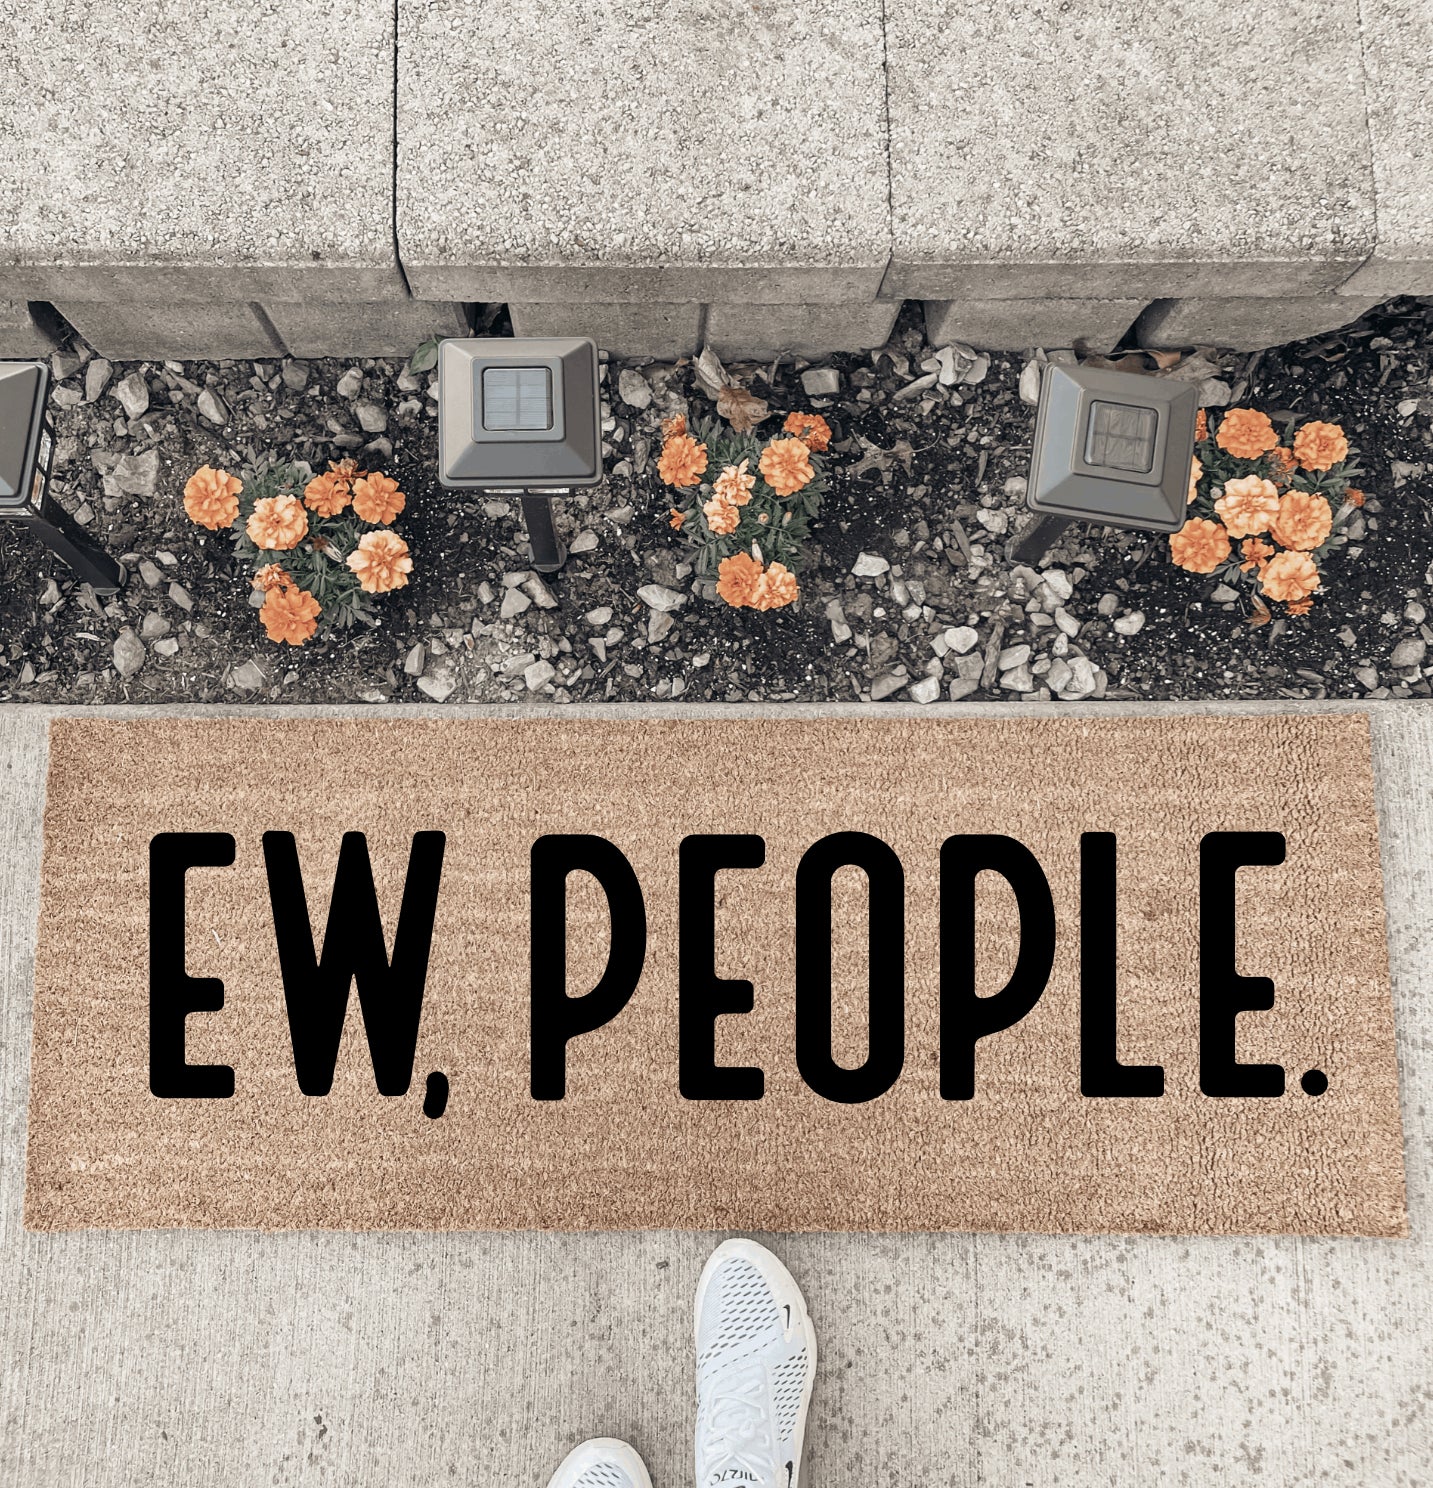 Ew, People. - Double Door Doormat